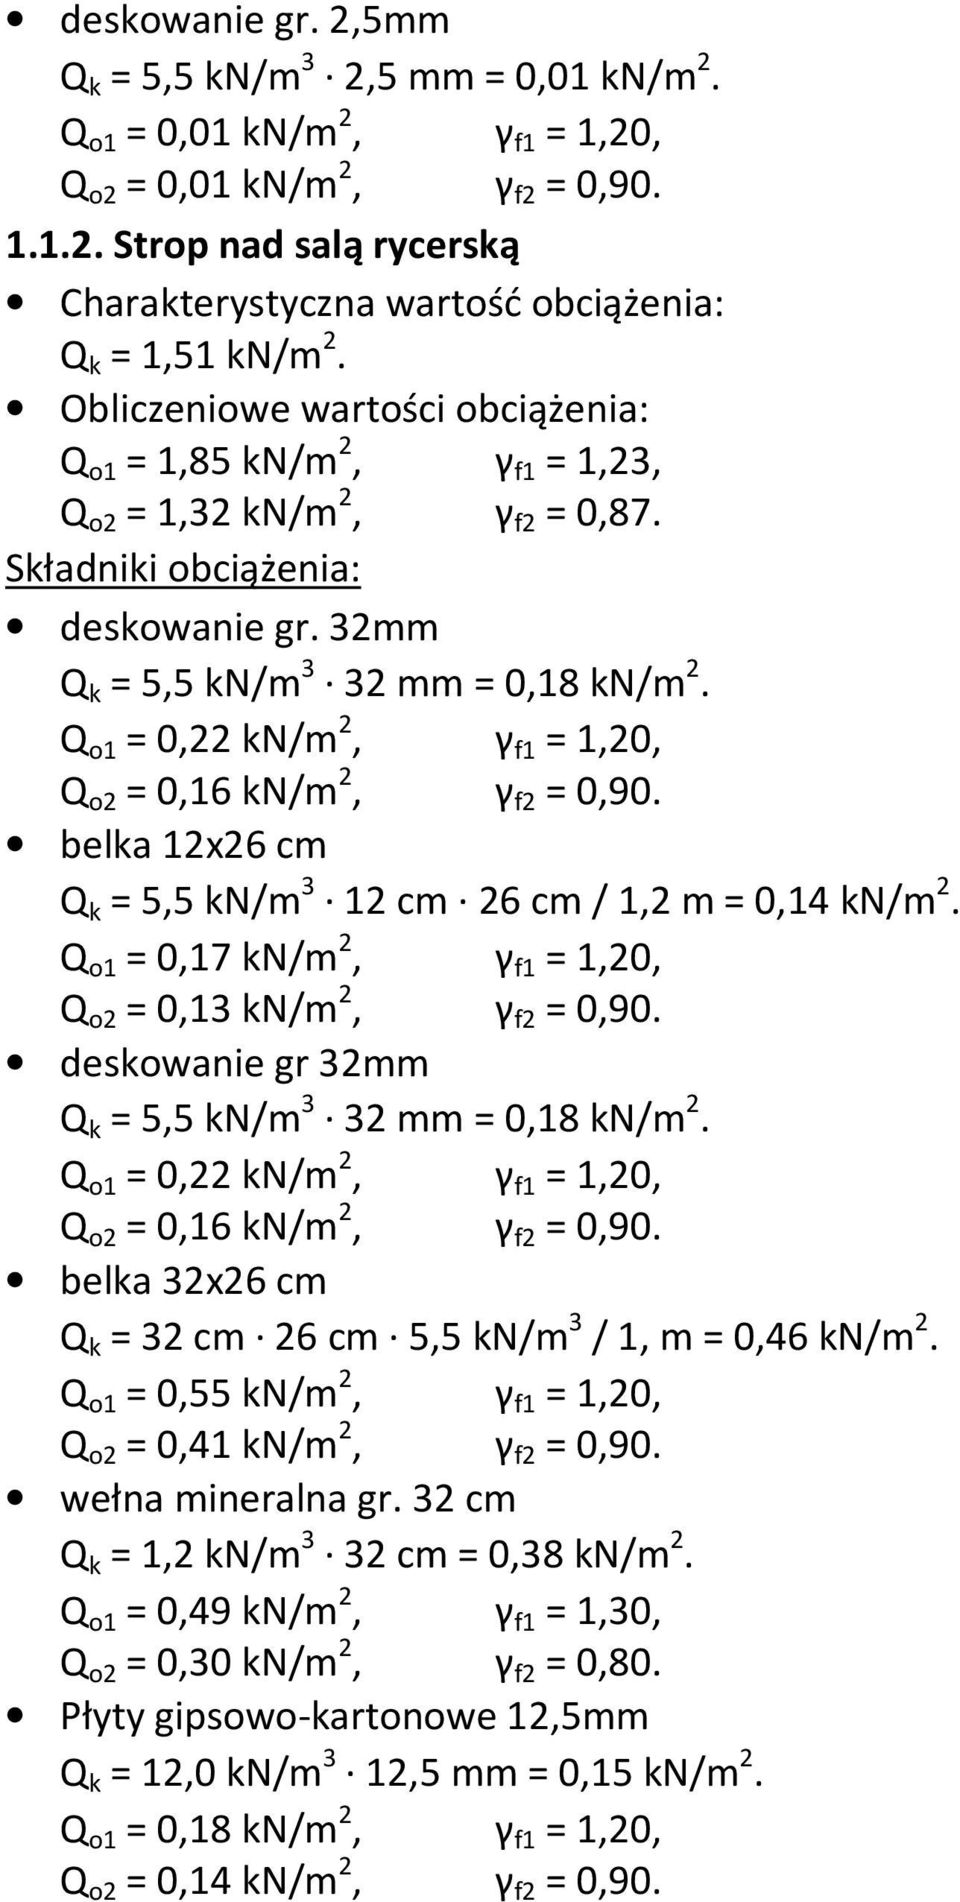 belka 12x26 cm Q k = 5,5 kn/m 3 12 cm 26 cm / 1,2 m = 0,14 kn/m 2. Q o1 = 0,17 kn/m 2, γ f1 = 1,20, Q o2 = 0,13 kn/m 2, γ f2 = 0,90. deskowanie gr 32mm Q k = 5,5 kn/m 3 32 mm = 0,18 kn/m 2.